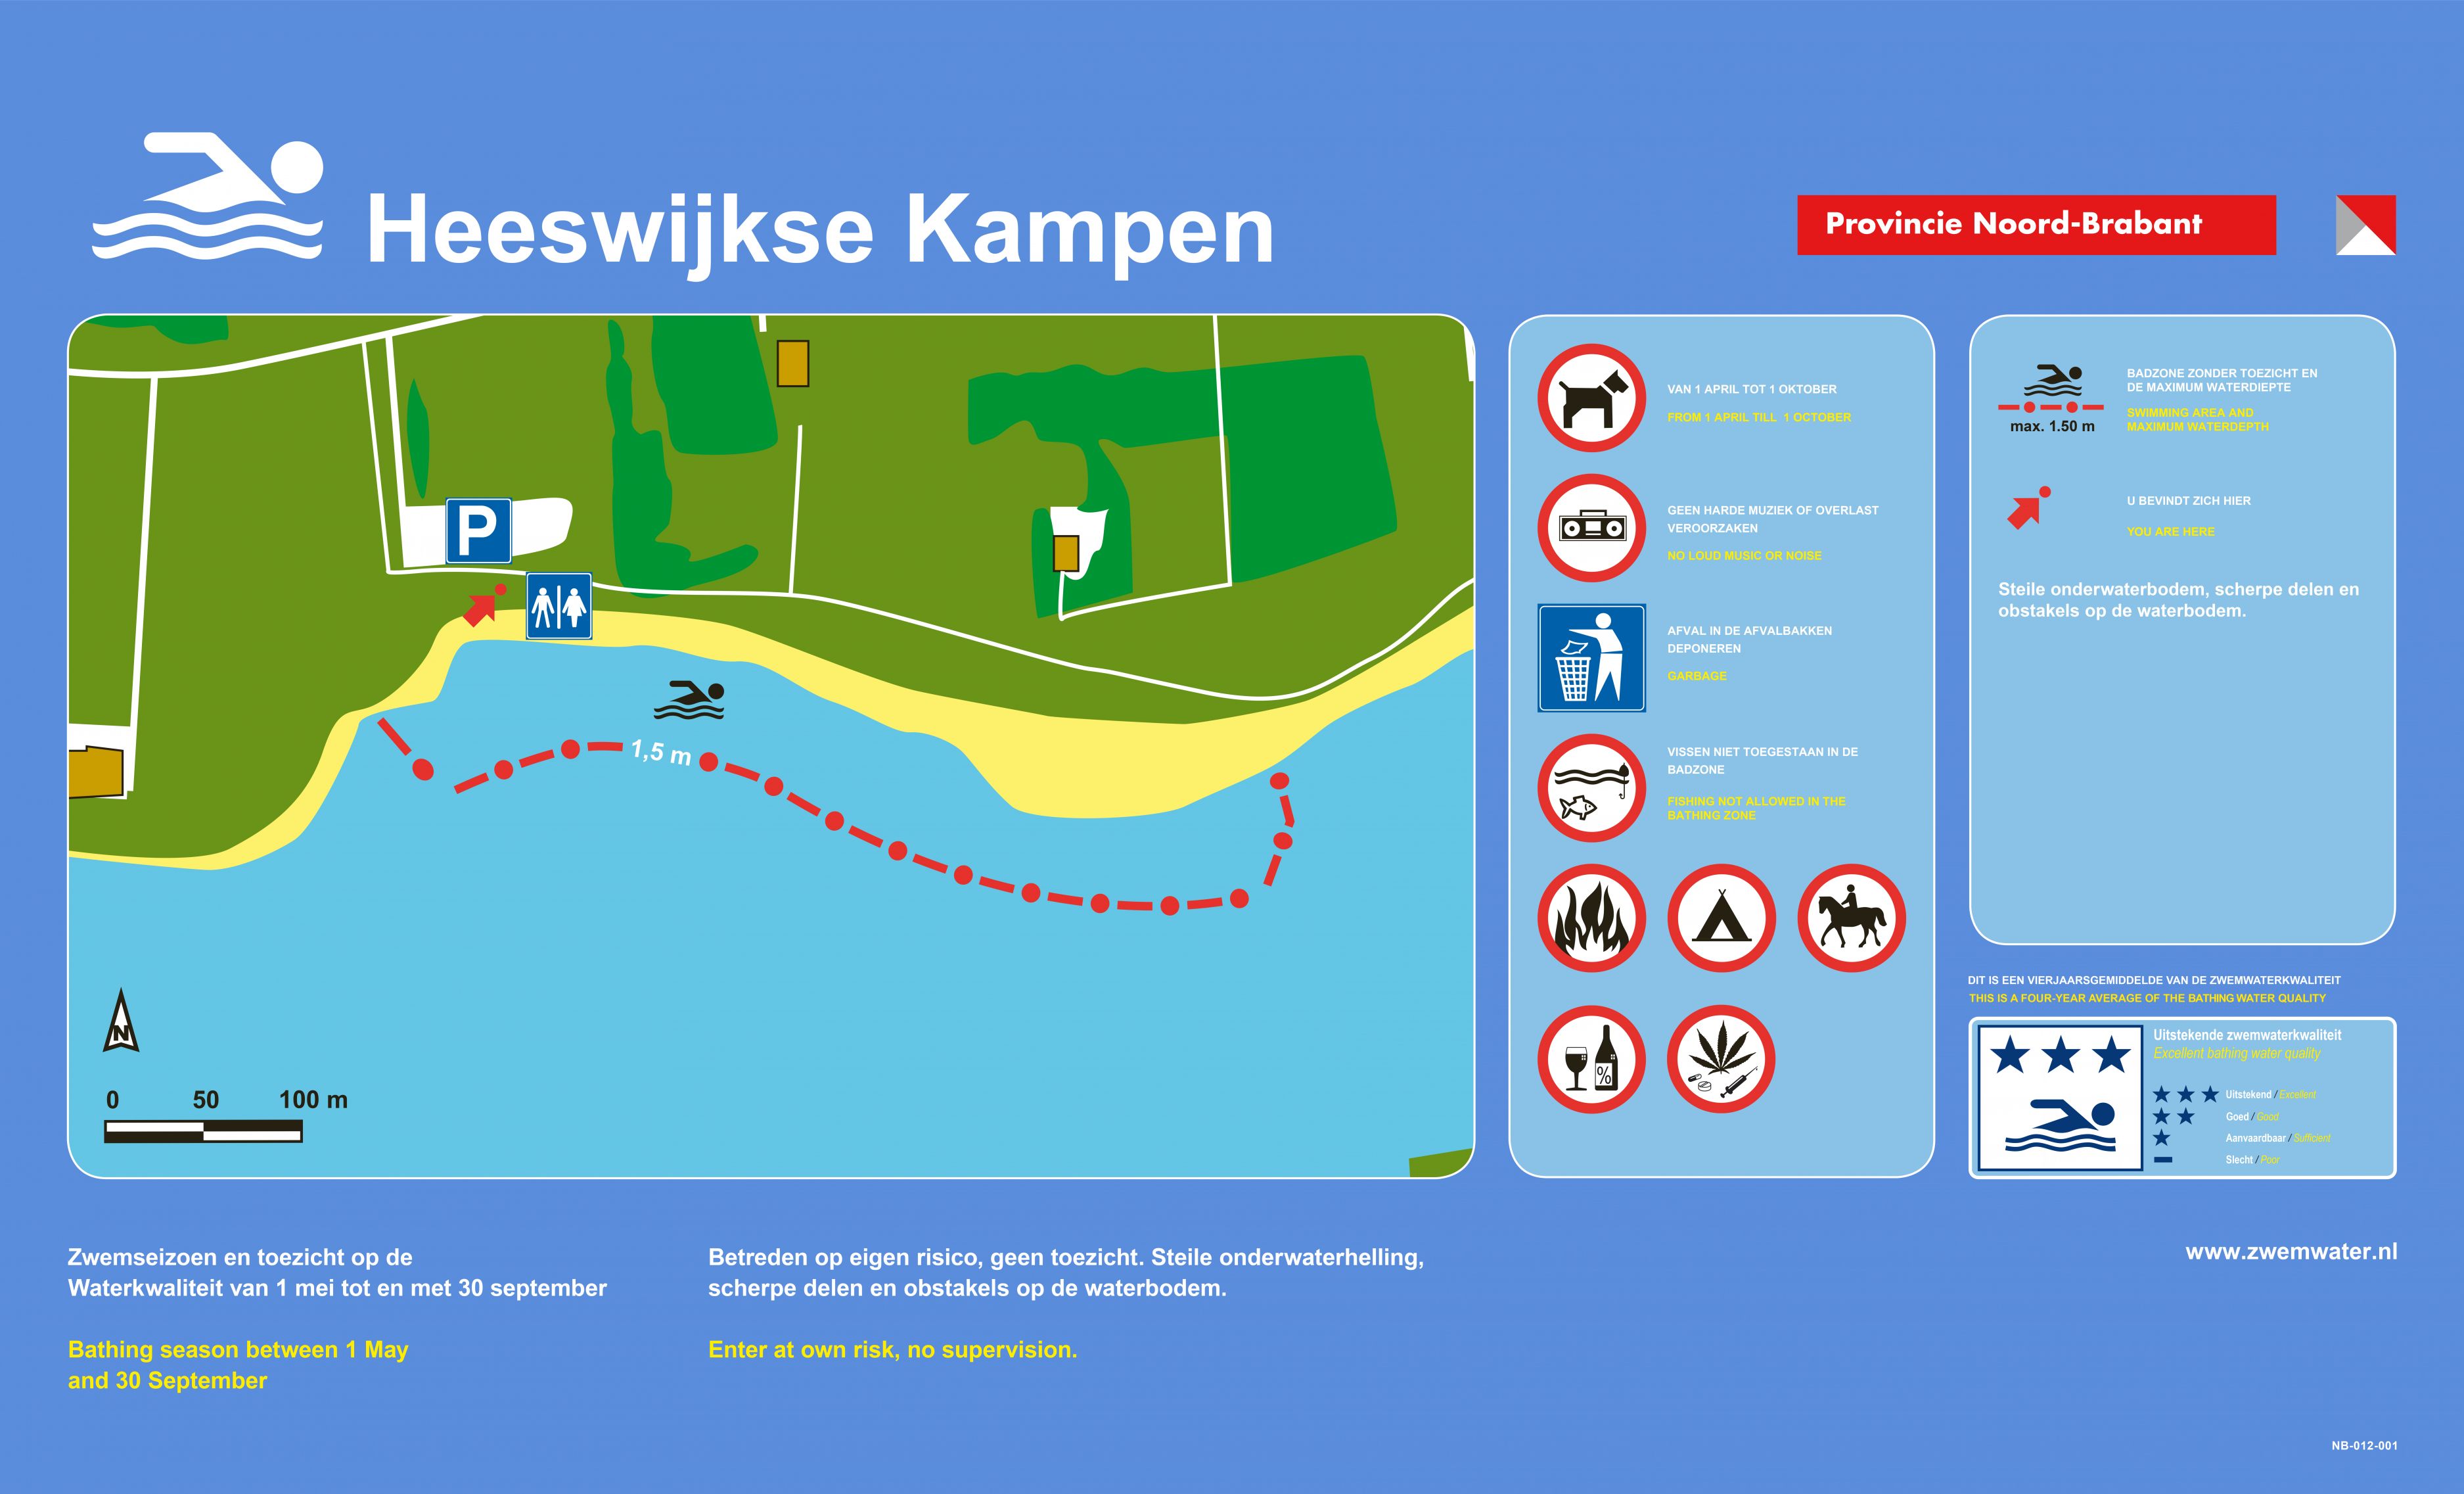 Het informatiebord bij zwemlocatie Heeswijkse Kampen